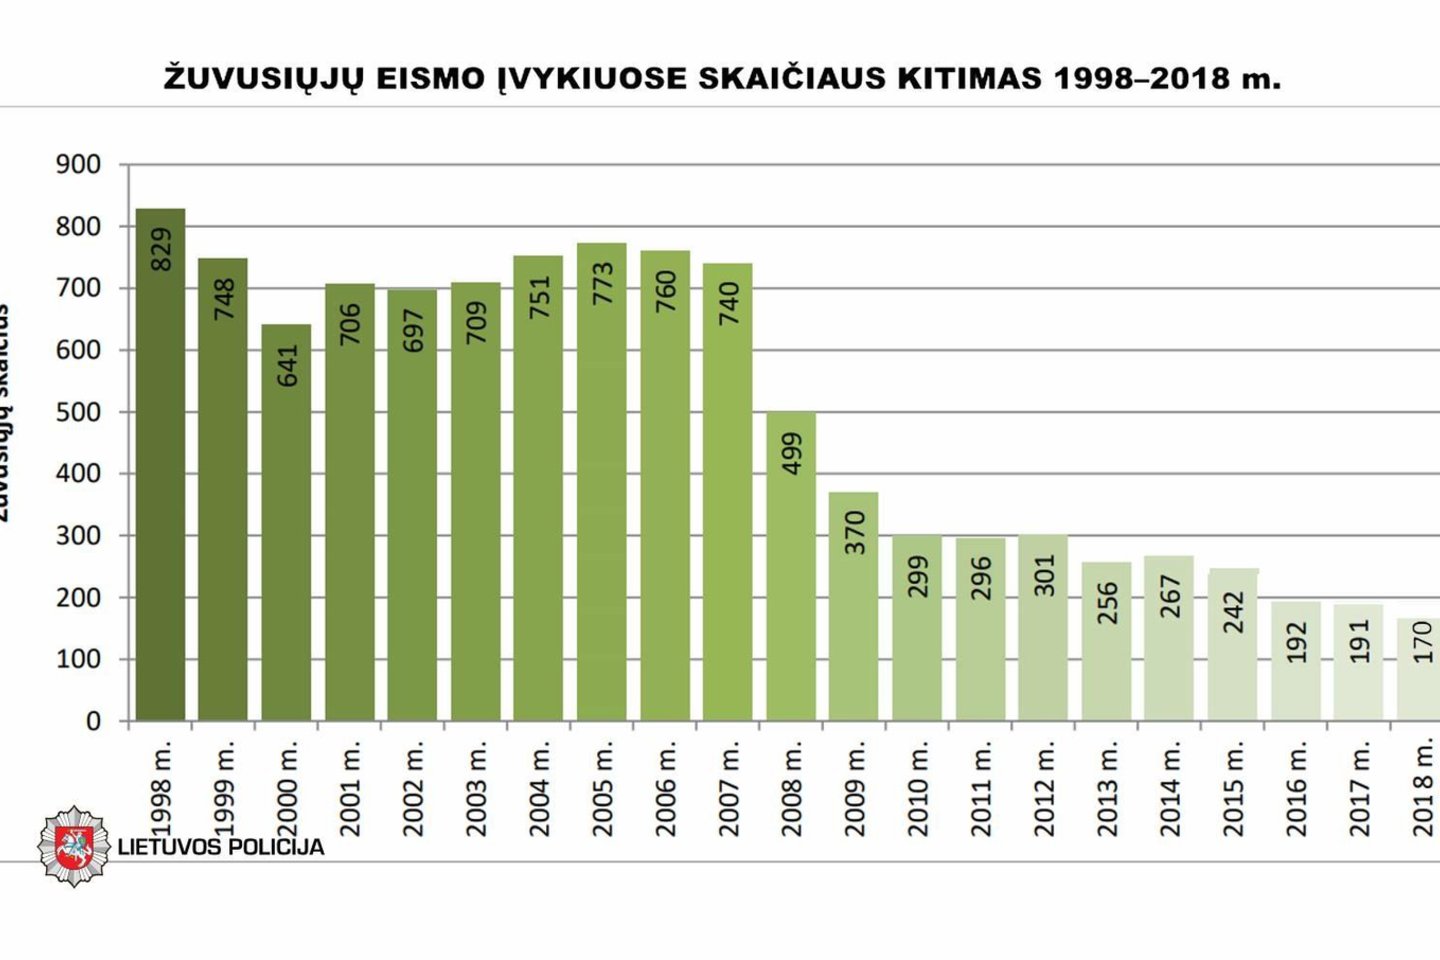  Per 20 metų žuvusiųjų Lietuvos keliuose akivaizdžiai sumažėjo.<br> Lietuvos policijos nuotr.